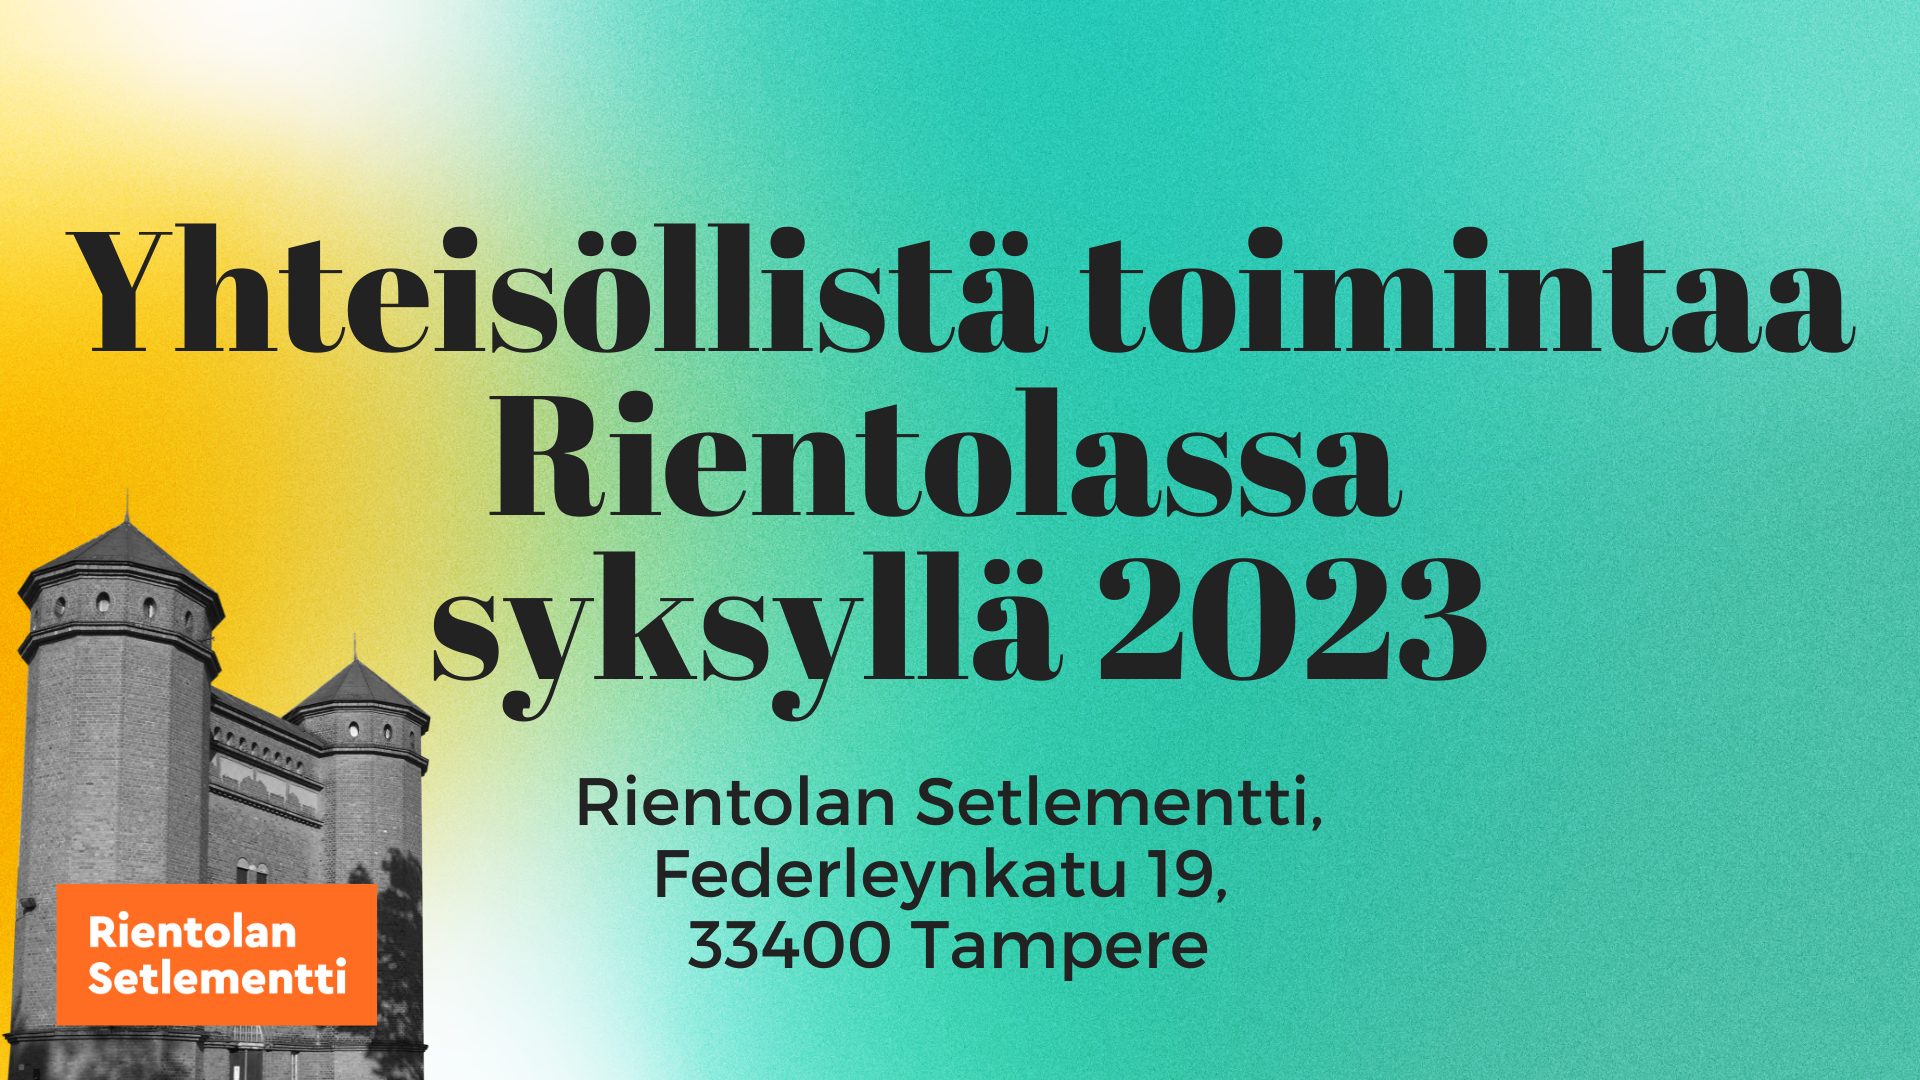 Yhteisöllistä toimintaa Rientolassa syksyllä 2023